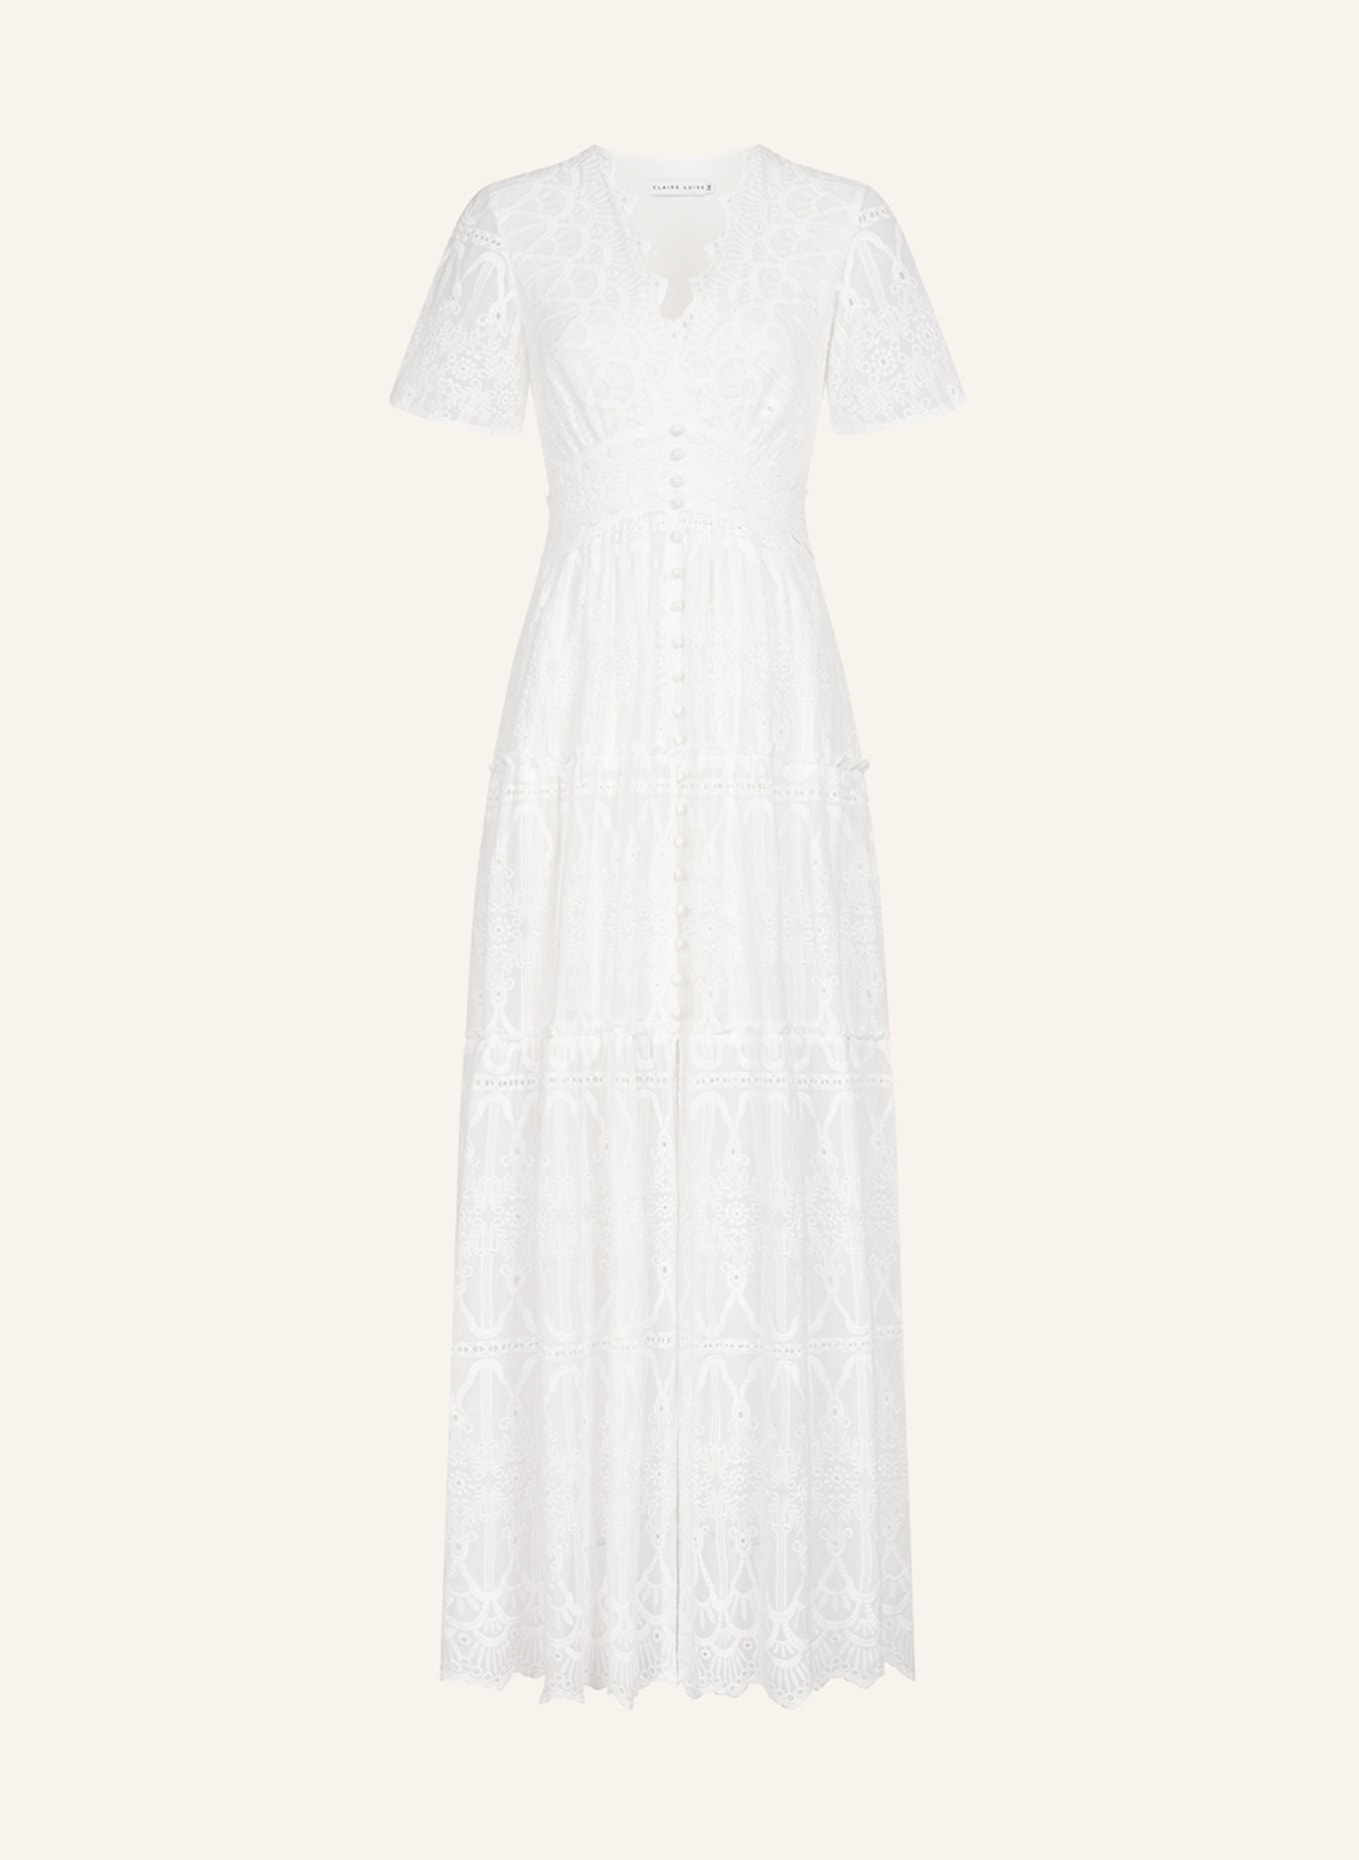 CLAIRE LUISE Kleid, Farbe: WEISS (Bild 1)